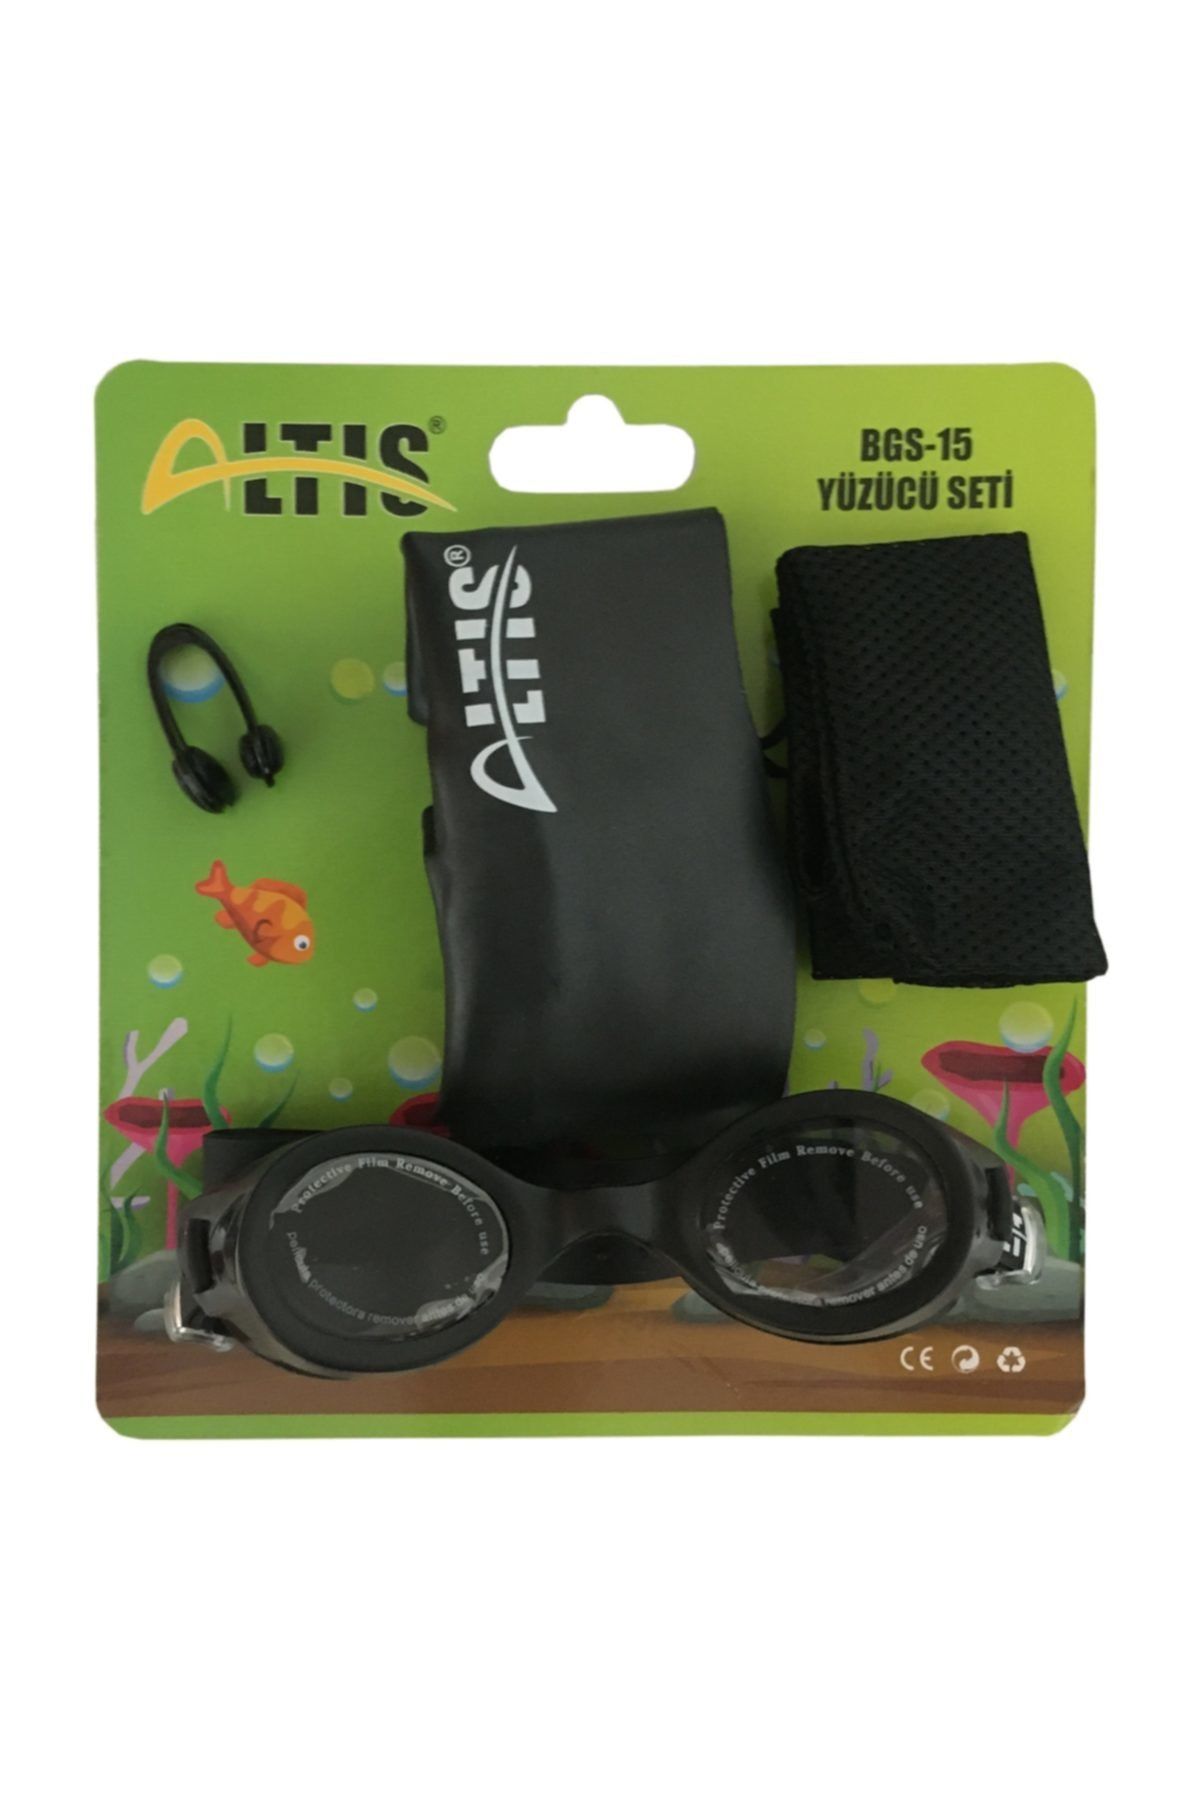 ALTIS Altis Çocuk Bgs-15 Yüzücü Seti-yüzme Gözlüğü-burun Tıkacı-bone Set